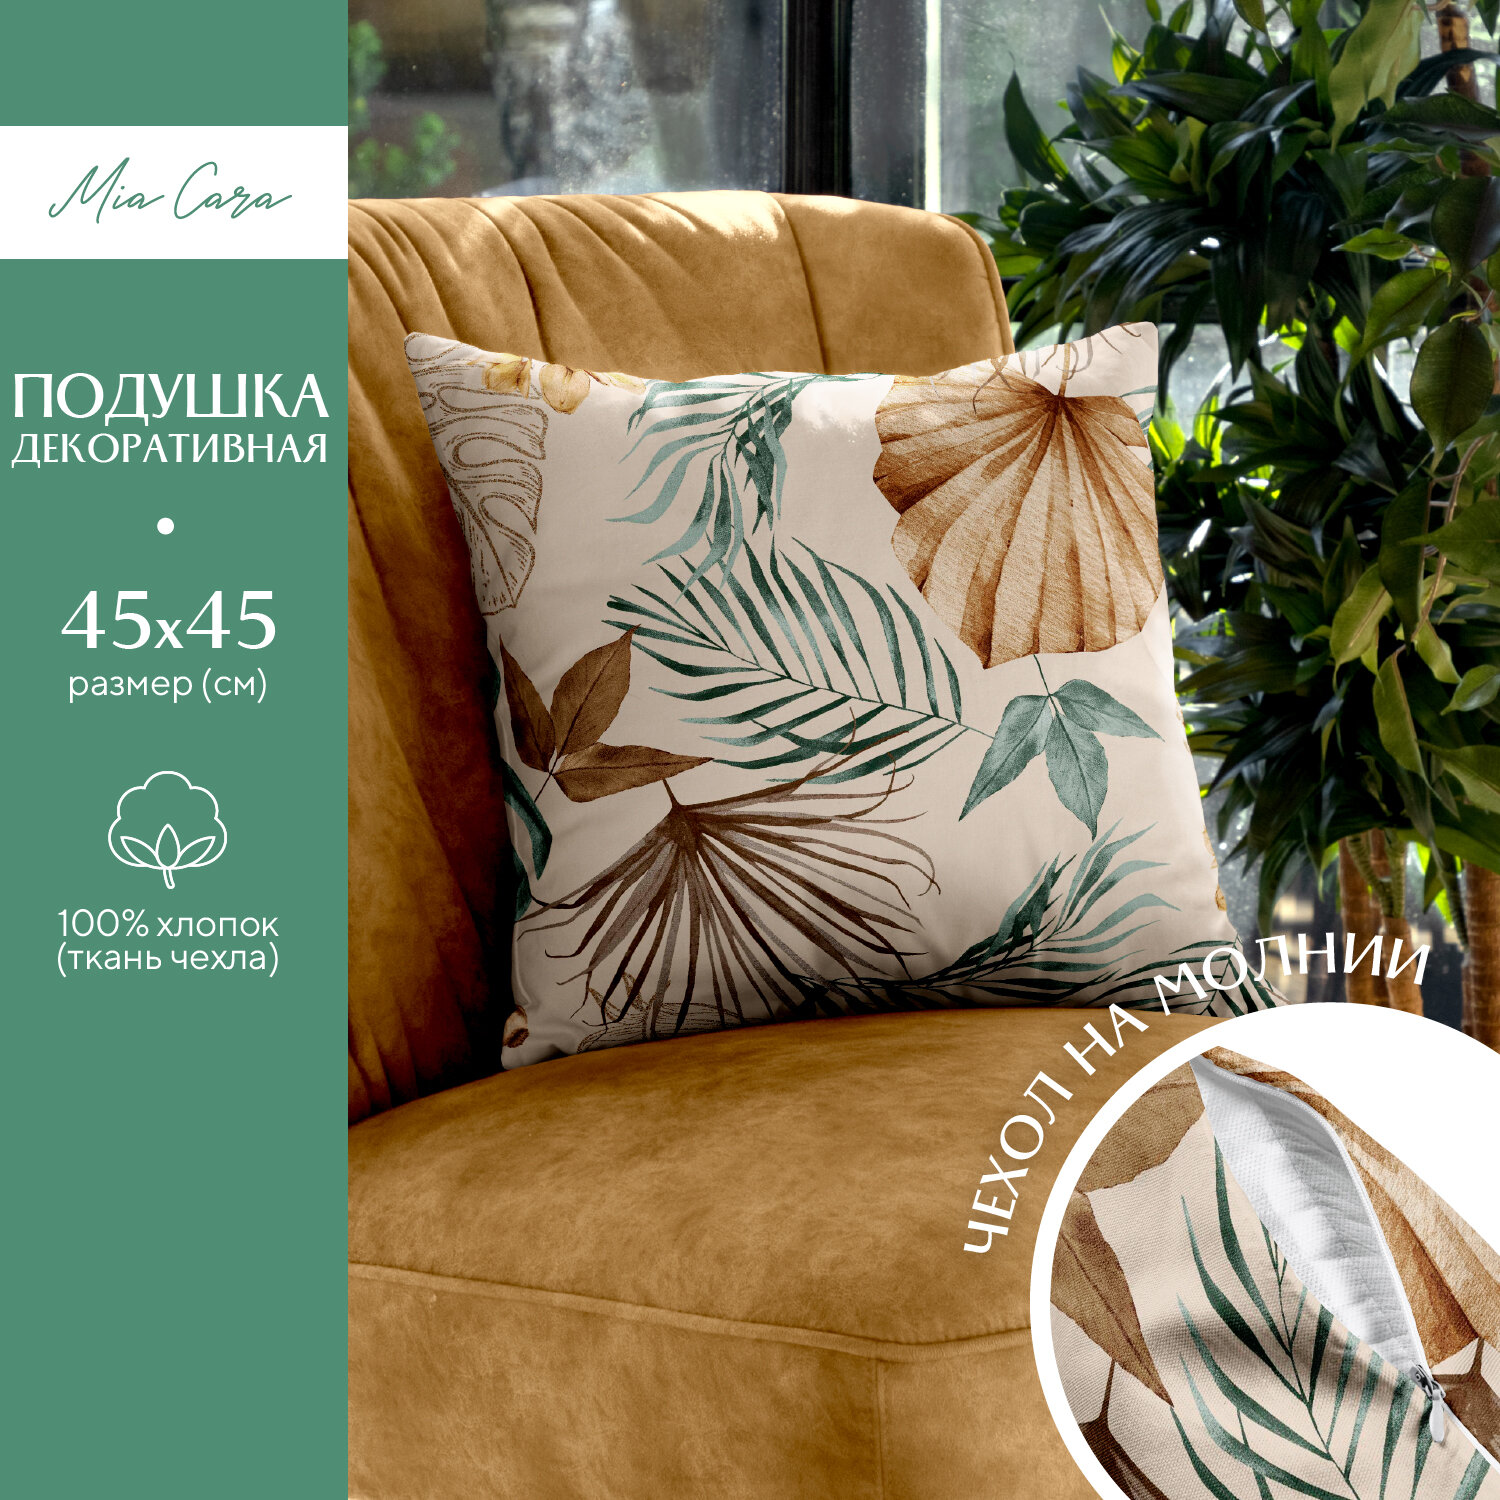 Подушка декоративная рогожка "Mia Cara" 45х45 рис 30662-2 Tropical palm